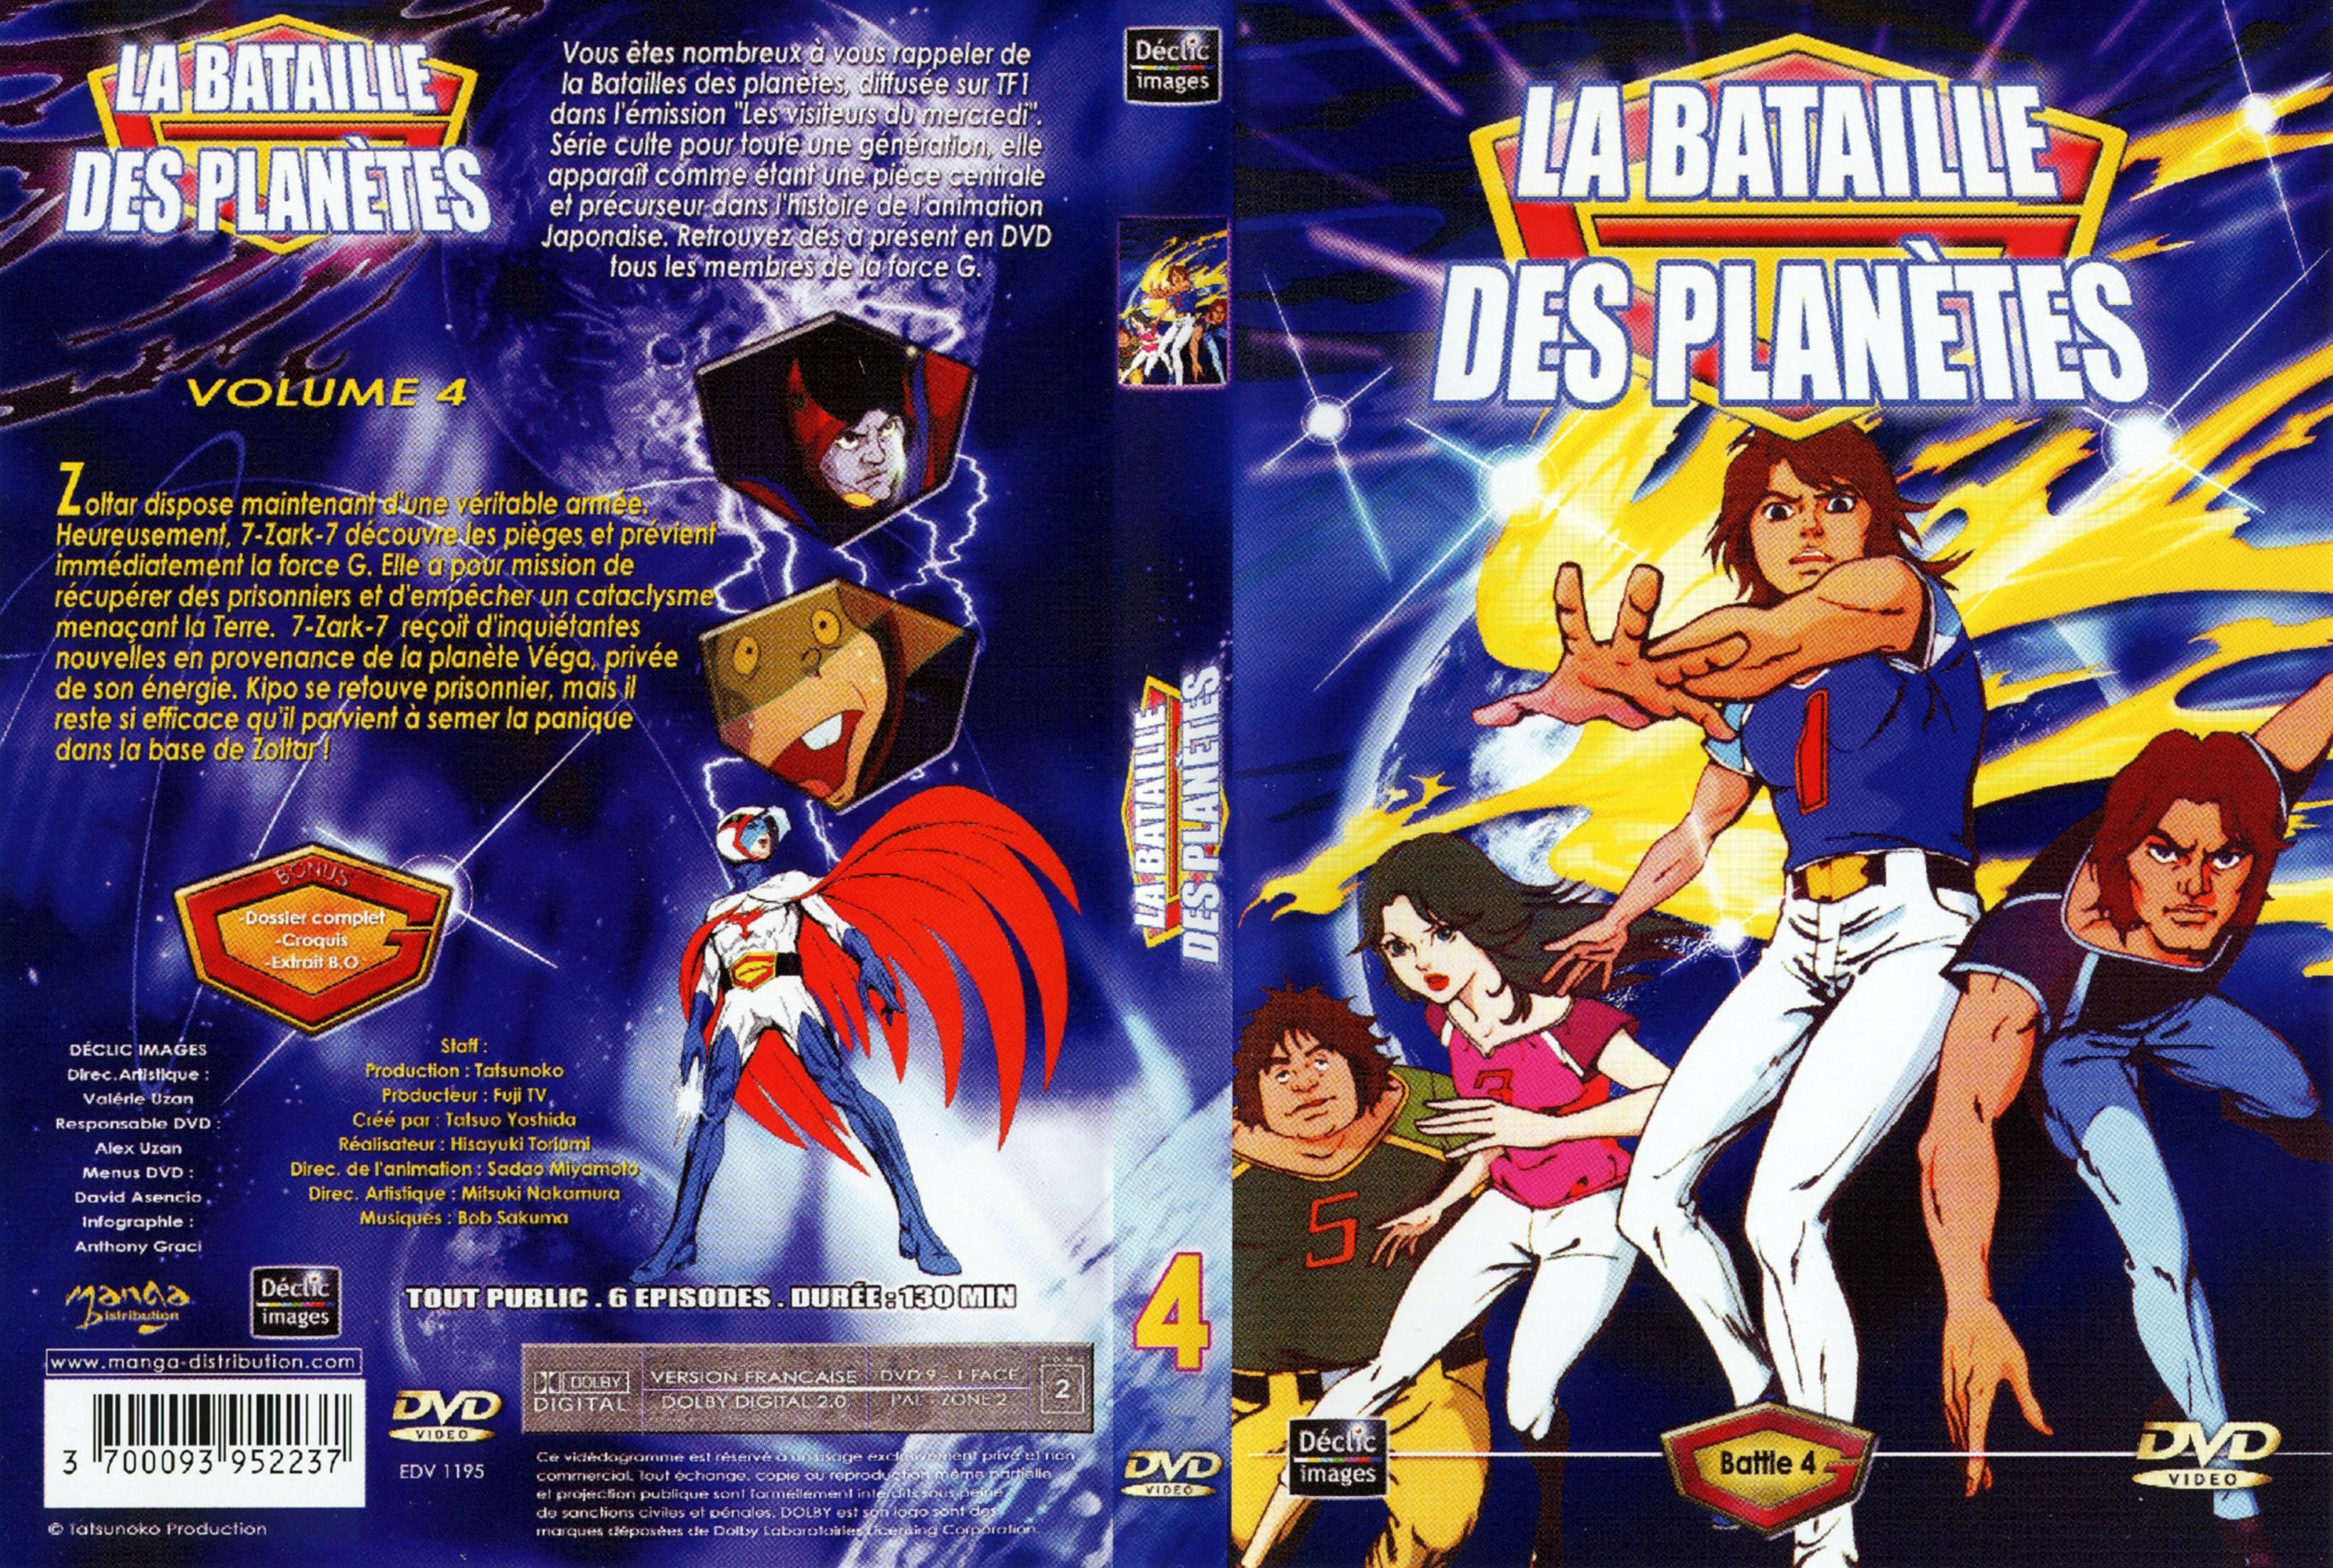 Jaquette DVD La bataille des planetes DVD 04